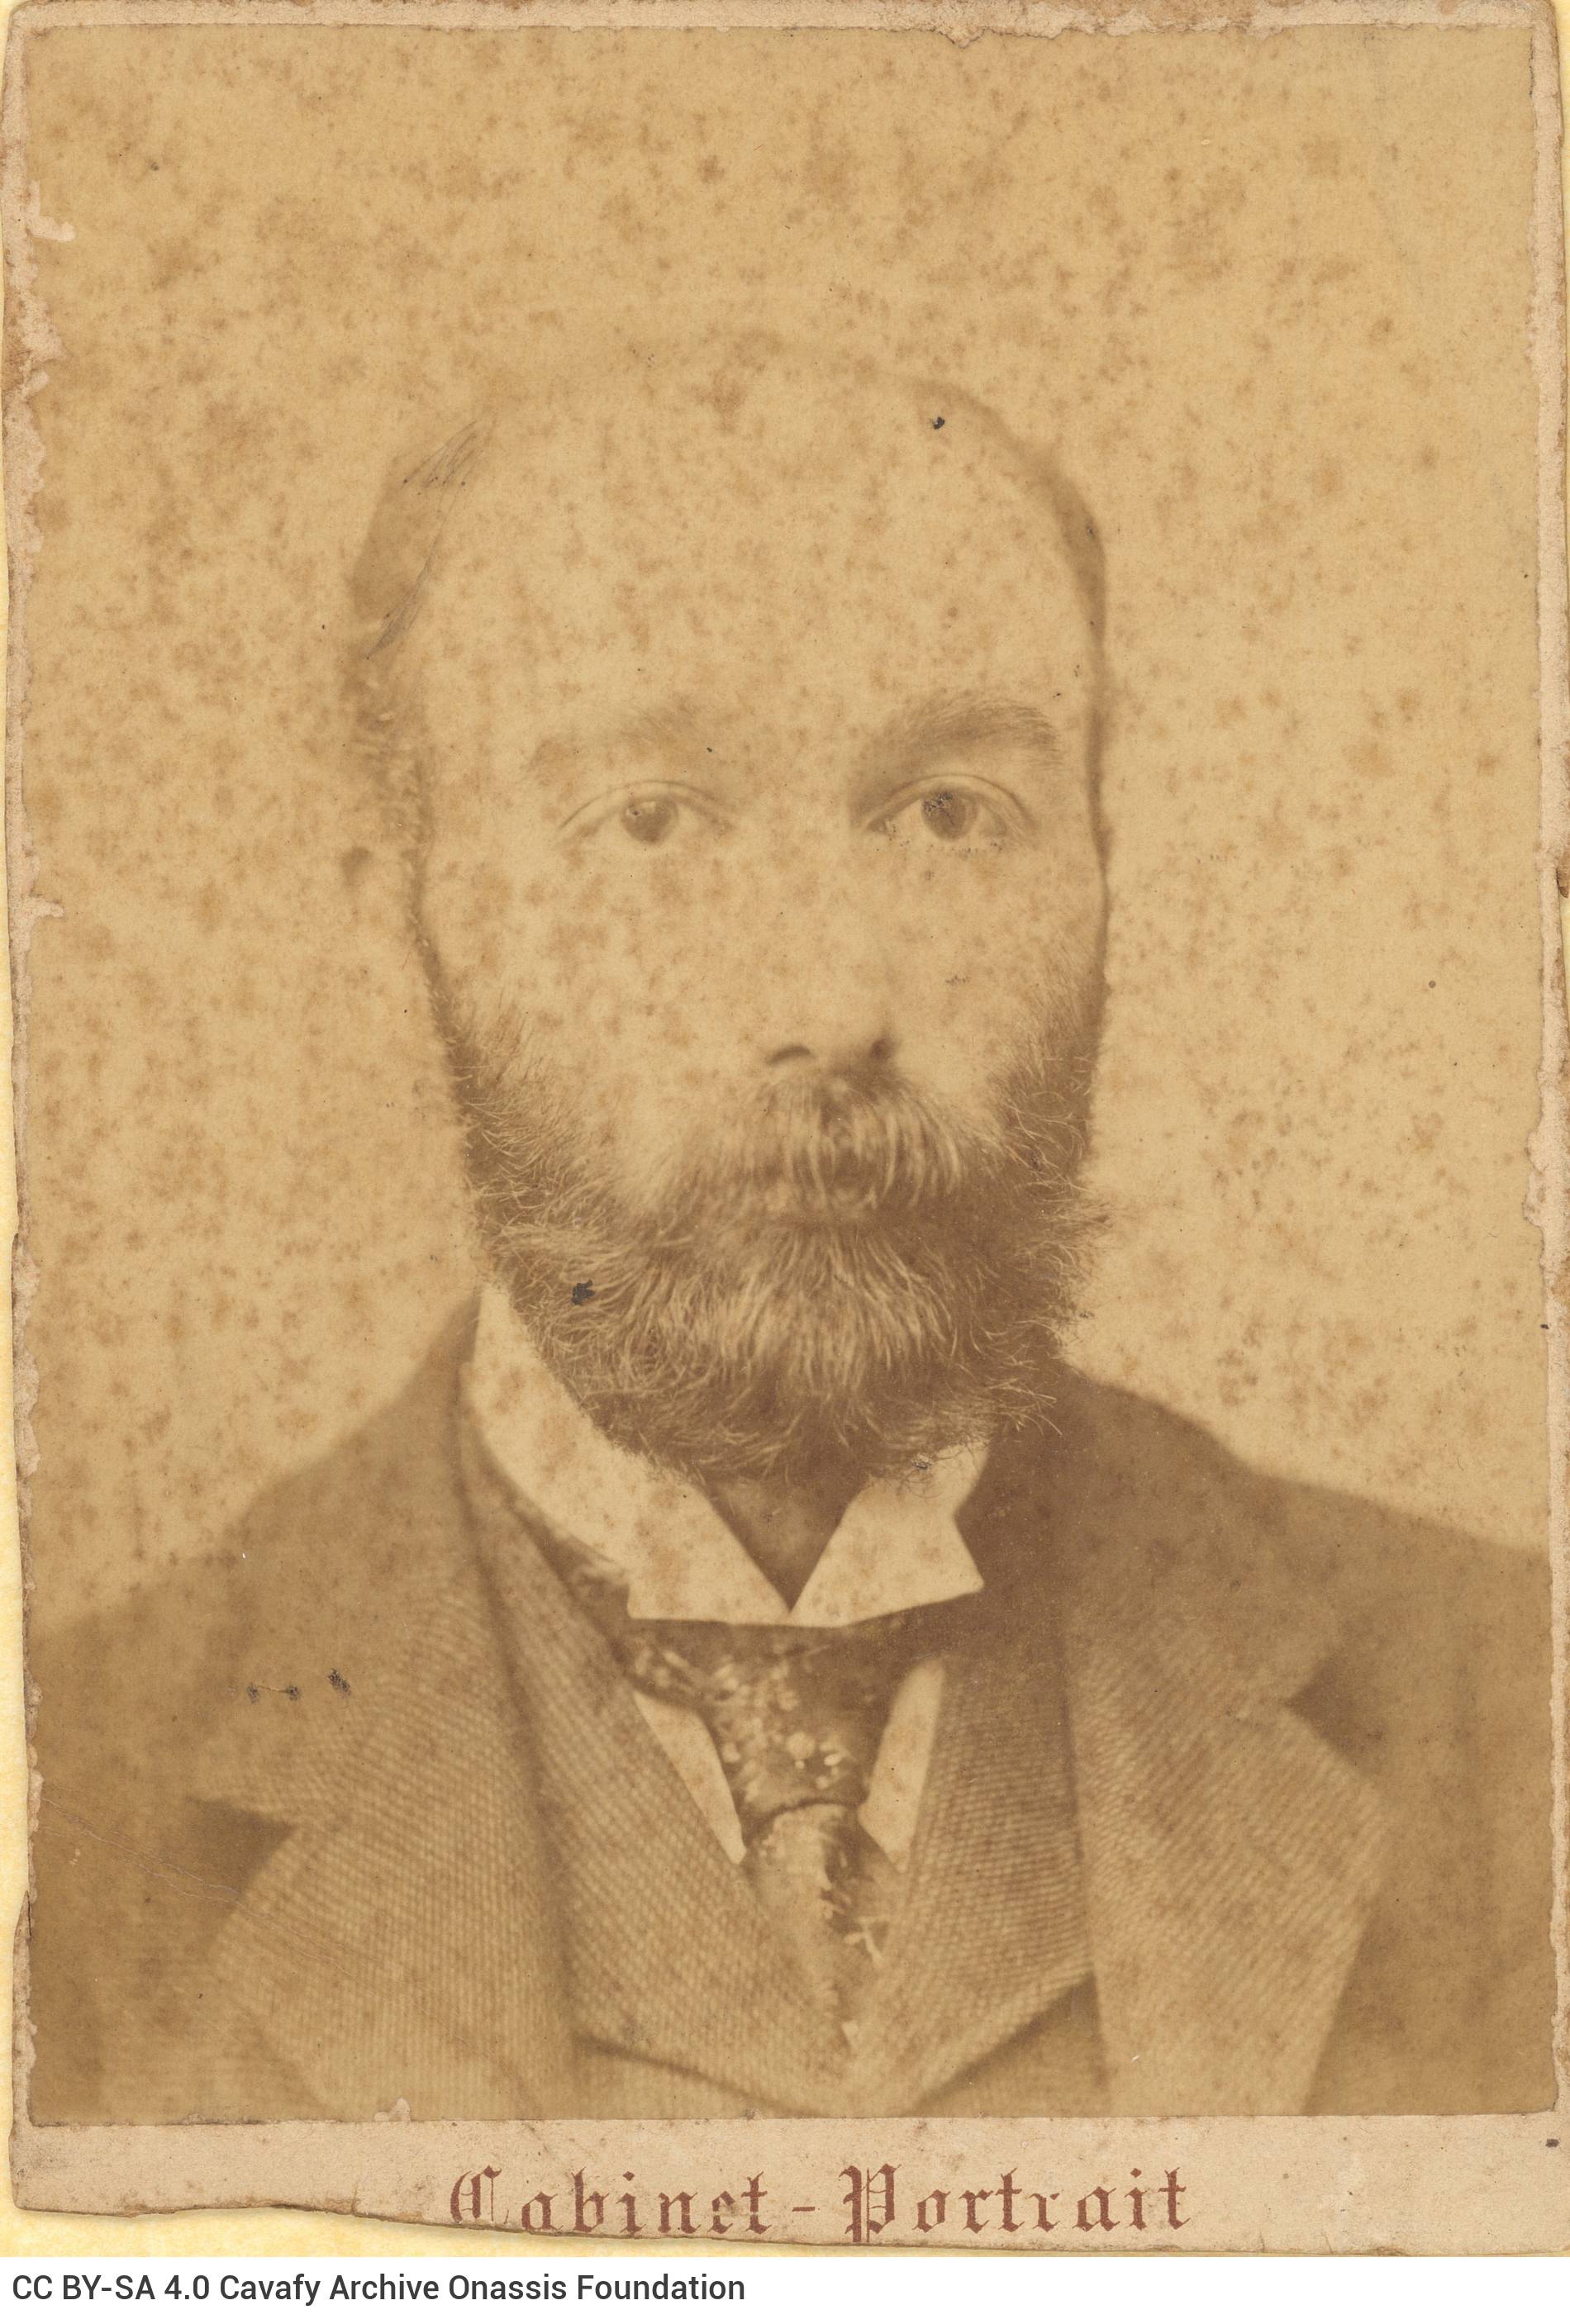 Φωτογραφικό πορτρέτο άνδρα με μουστάκι και γενειάδα, κοστούμι και γ�